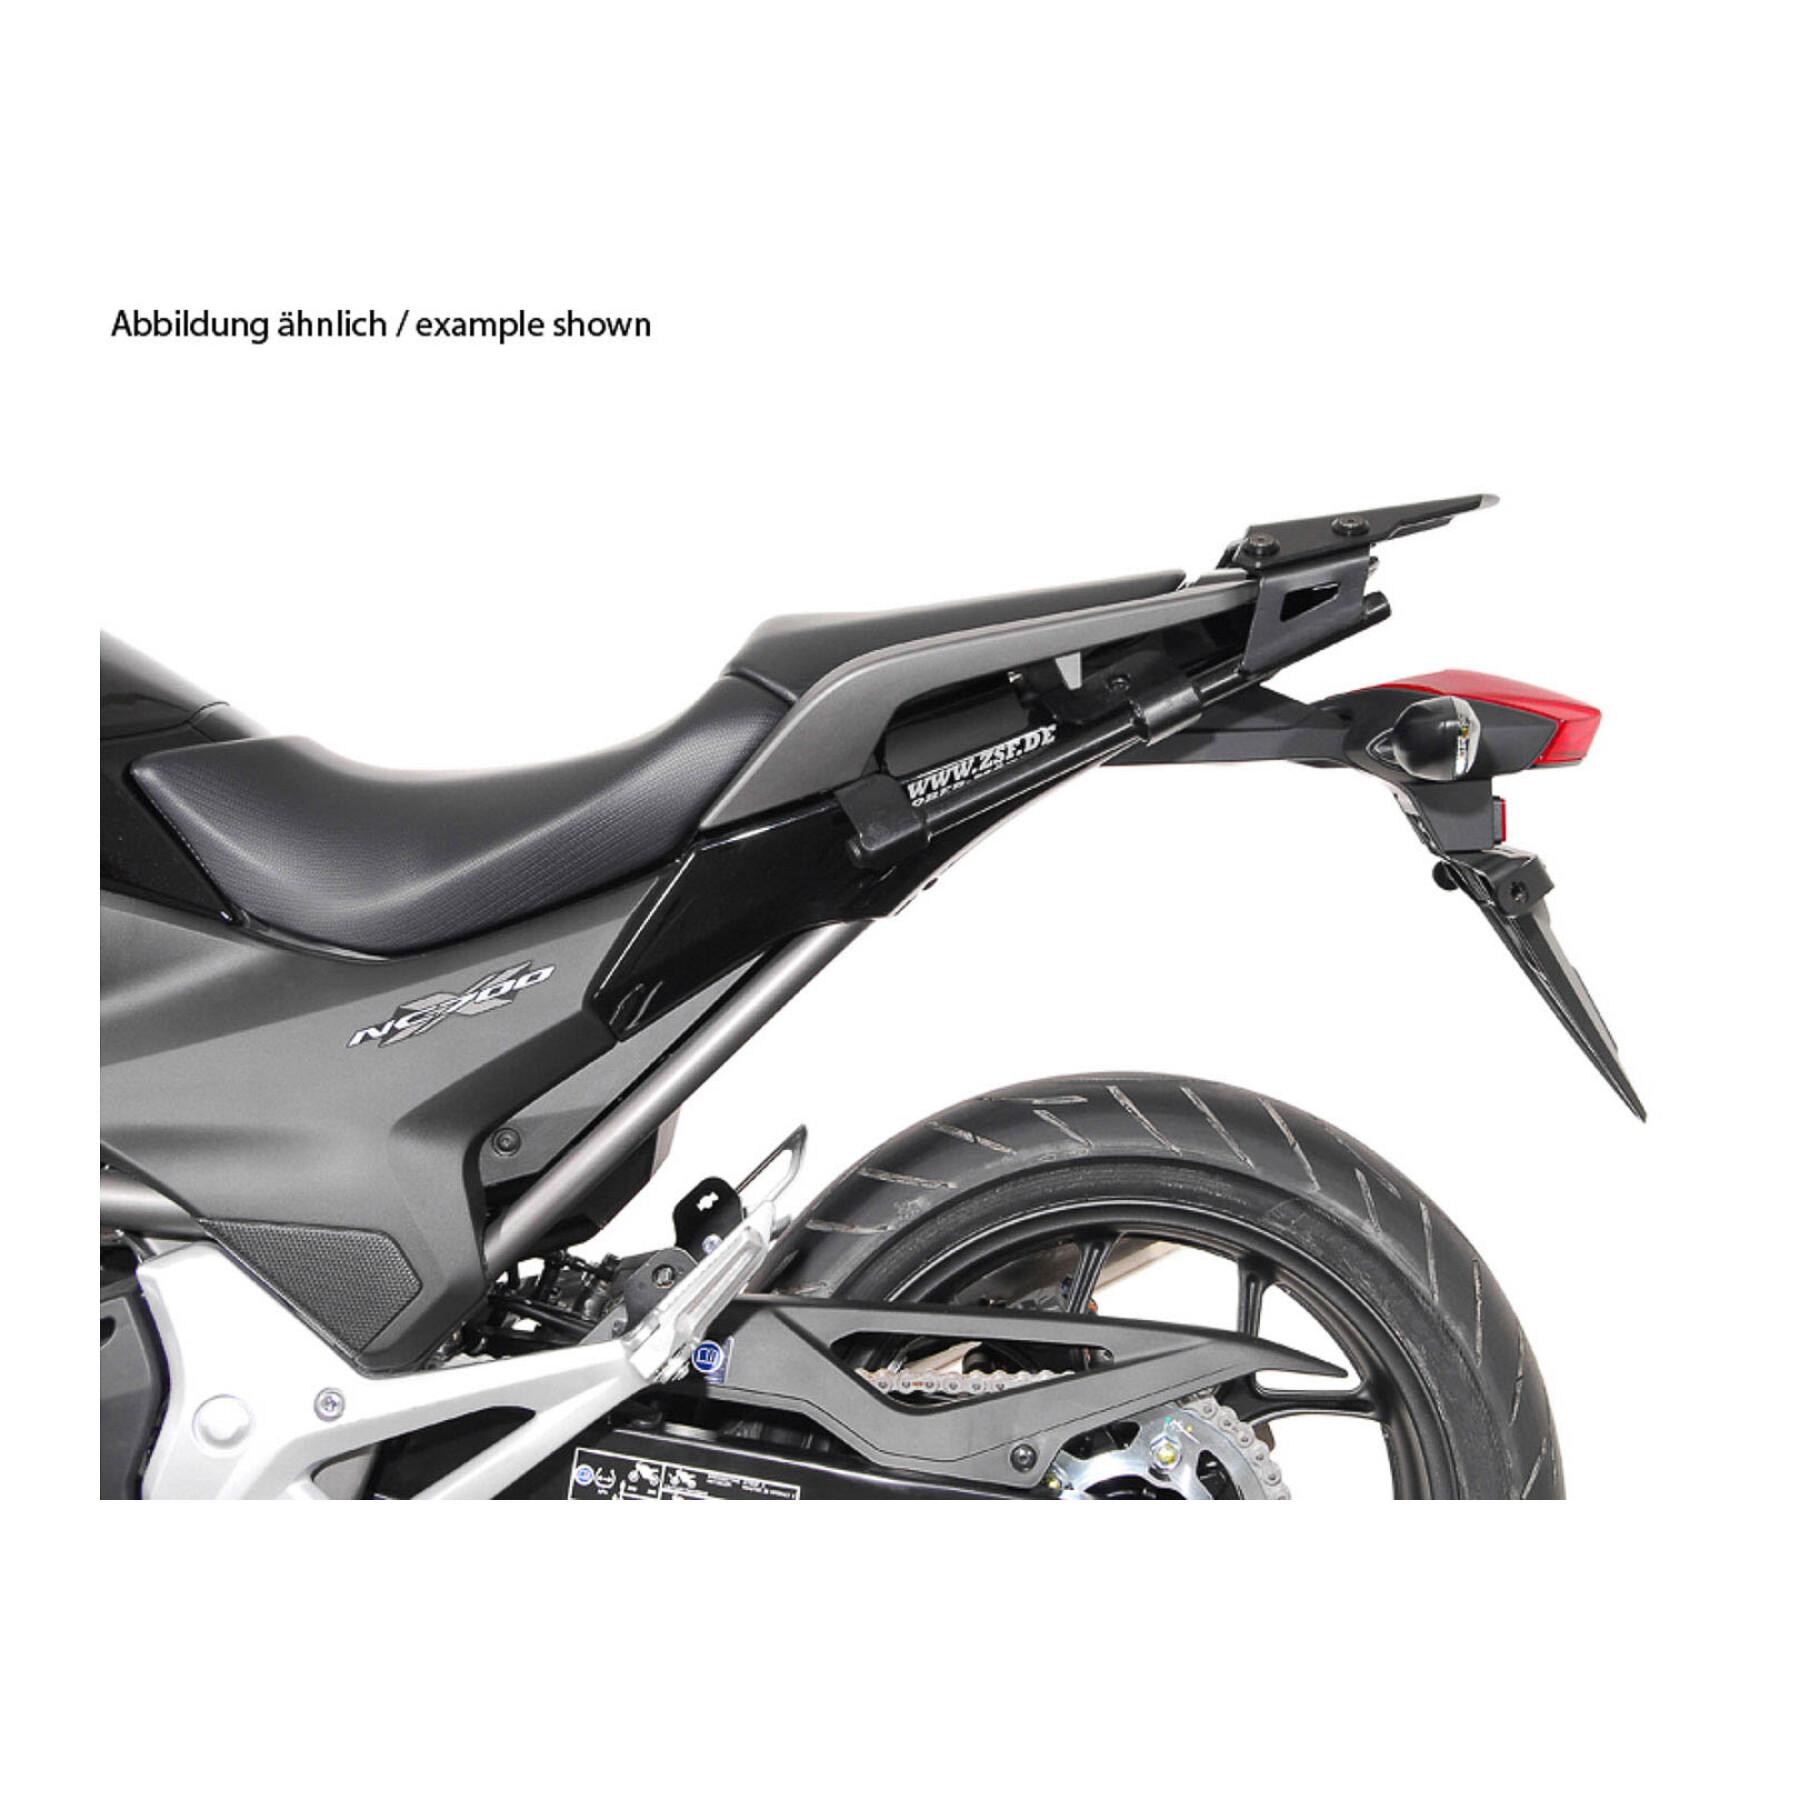 Sidostöd för motorcykel Sw-Motech Evo. Honda Nc700S/X (11-14),Nc750S/X (14-15)